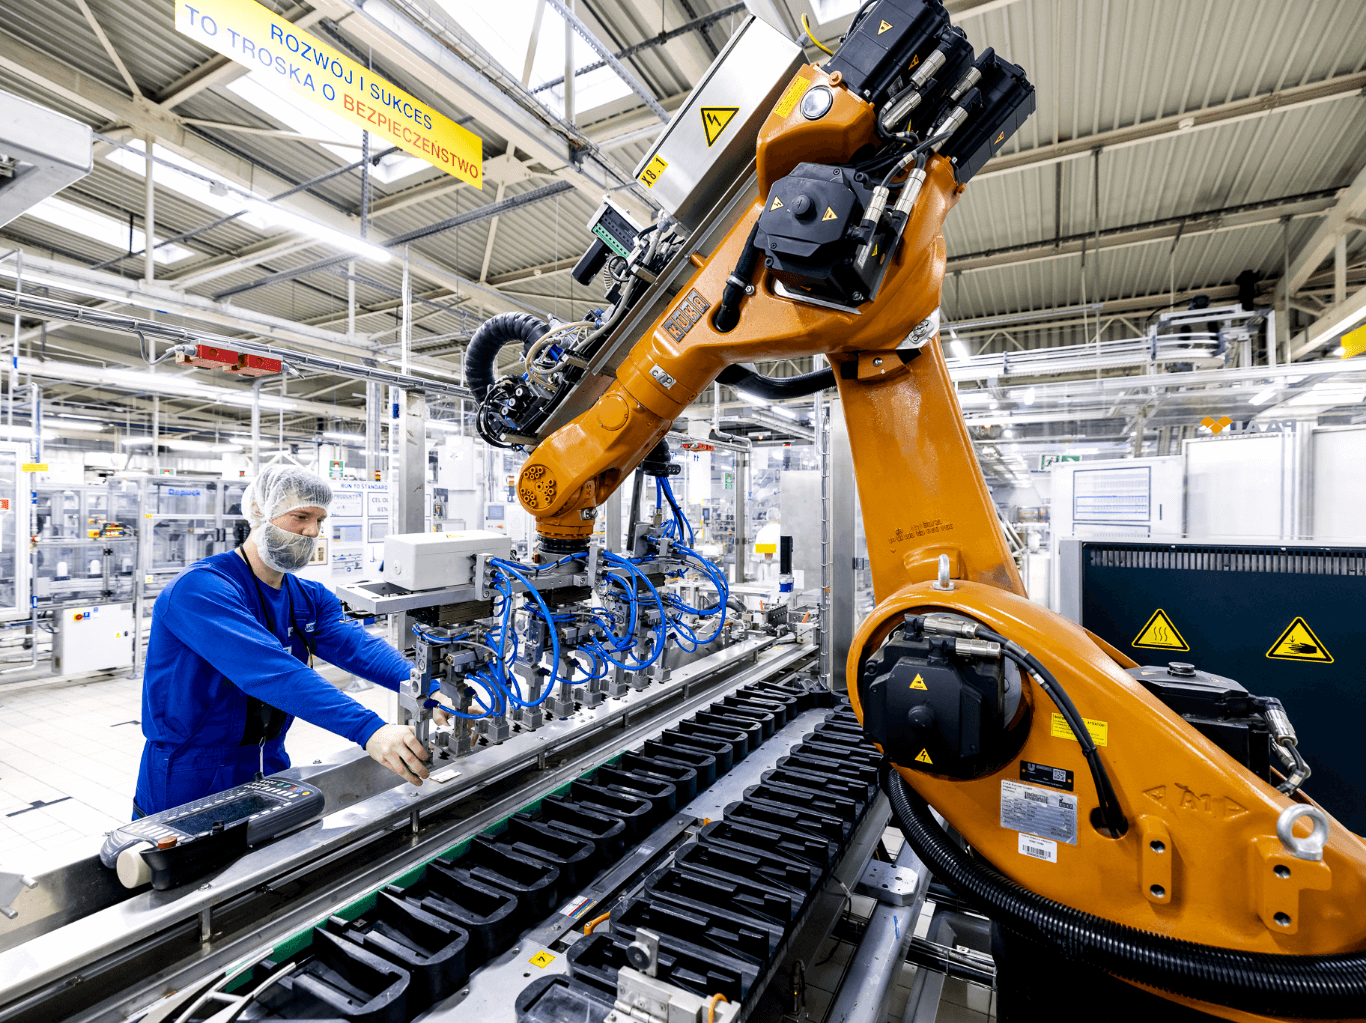 Wybierz nowoczesne miejsce pracy, które stwarza możliwość rozwoju - fabryka Unilever w Bydgoszczy